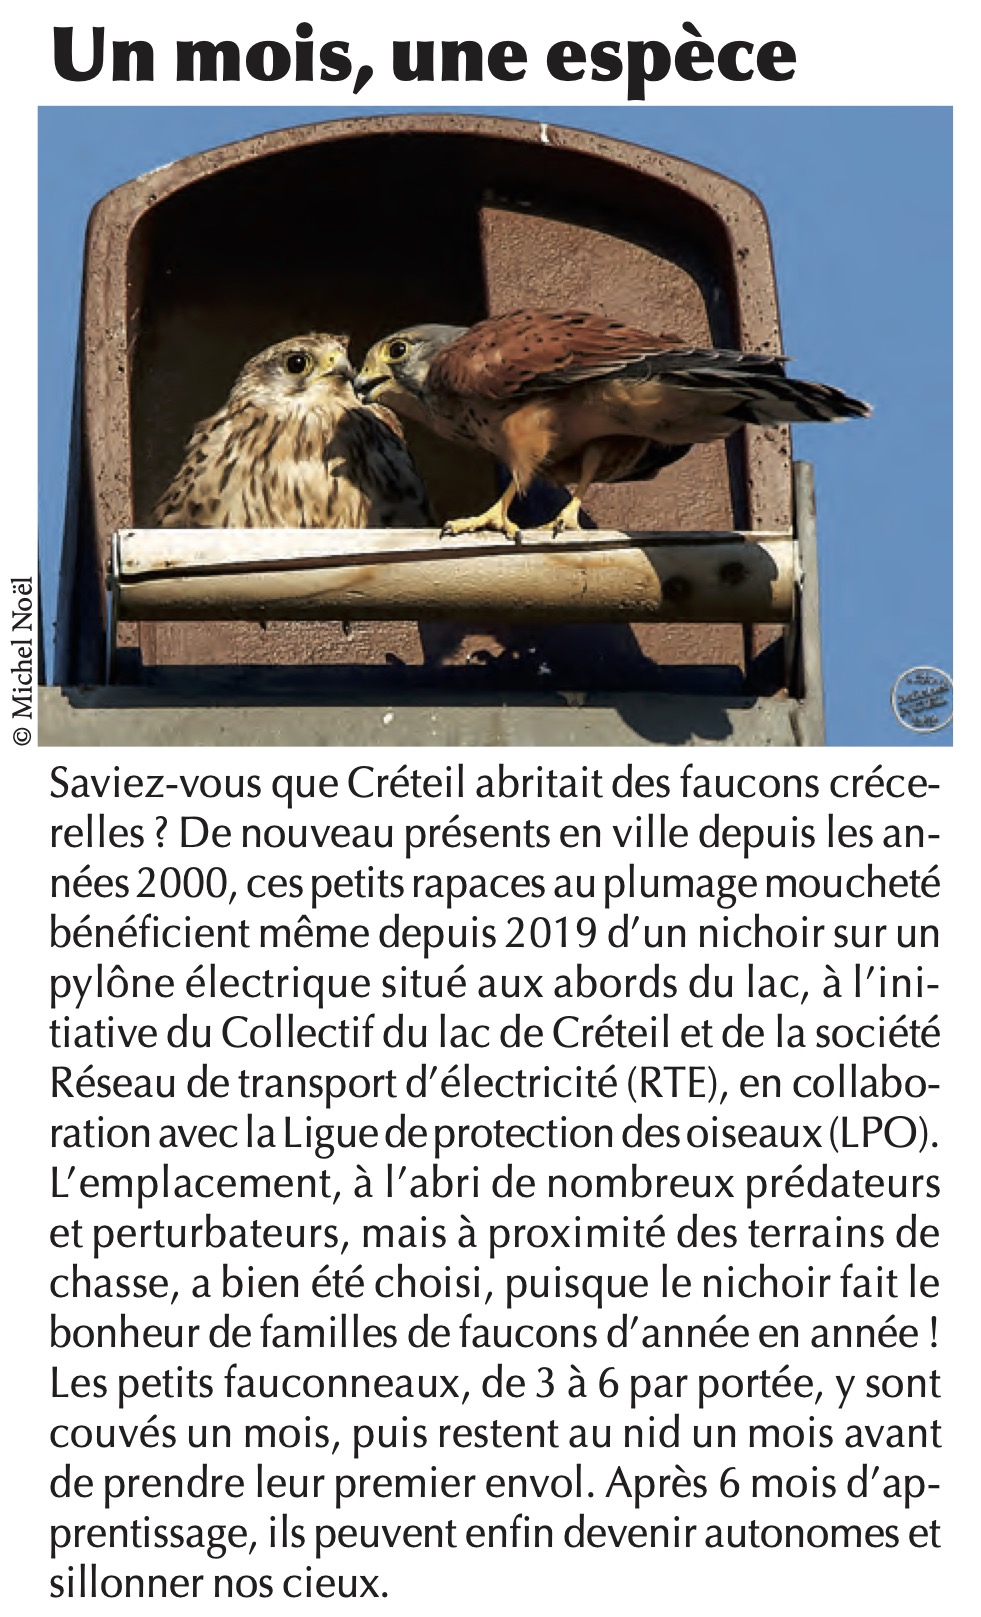 Un mois une espèce - Faucon crécerelle - VIVRE ENSEMBLE N° 417/DÉCEMBRE 2021 Page 7